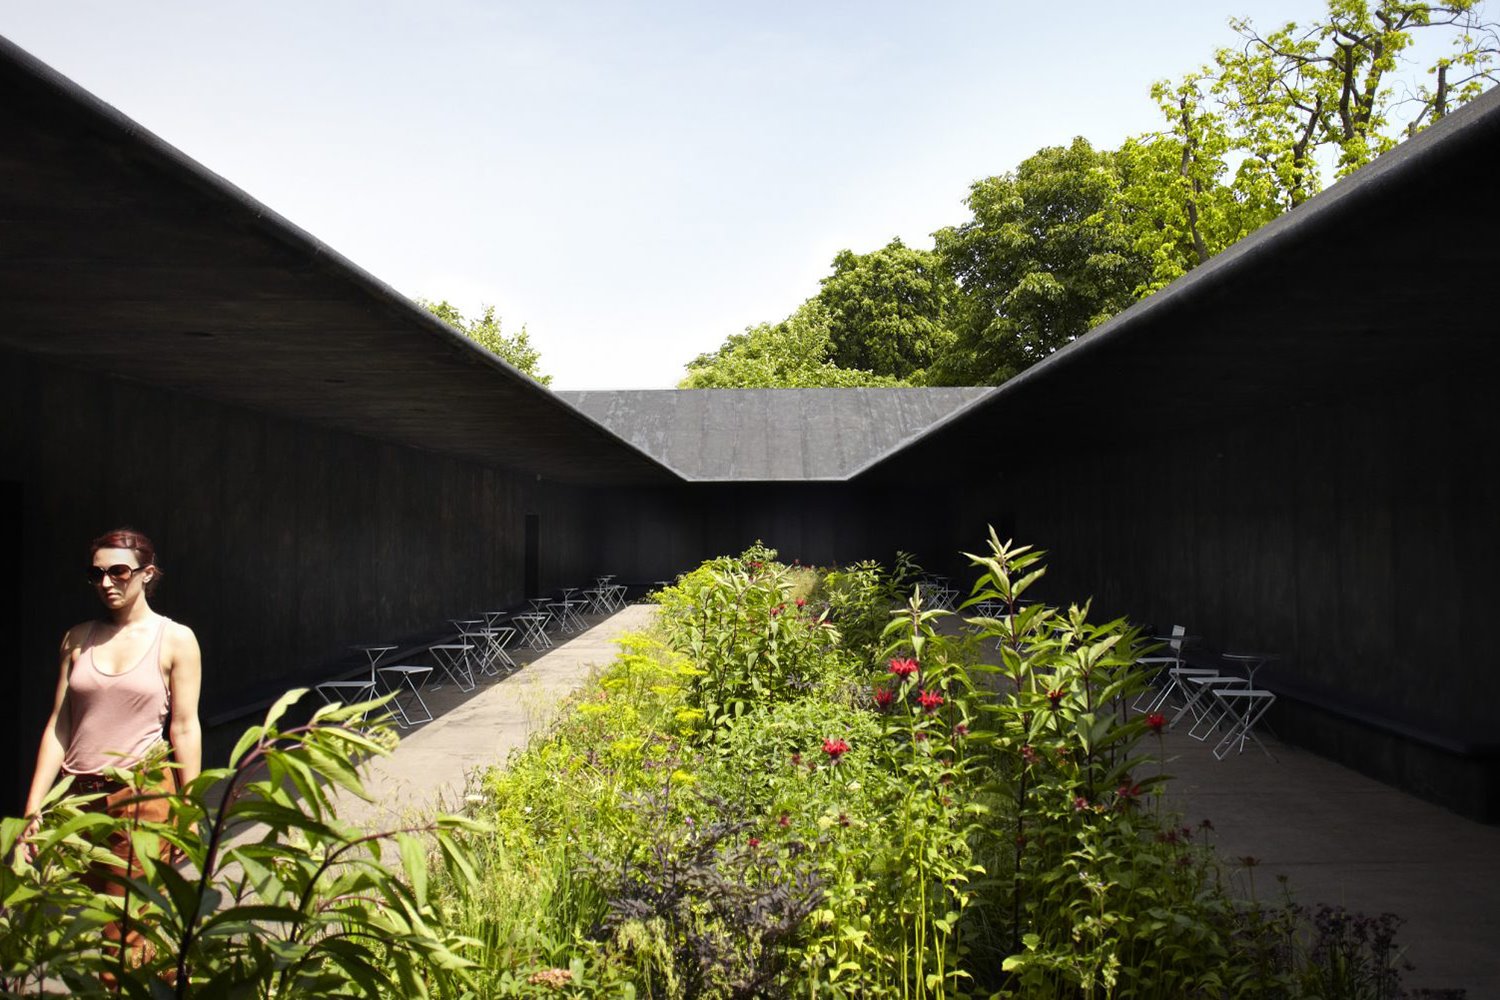 Peter Zumthor, arquitecto suizo, diseñó el Serpentine Pavilion de 2011